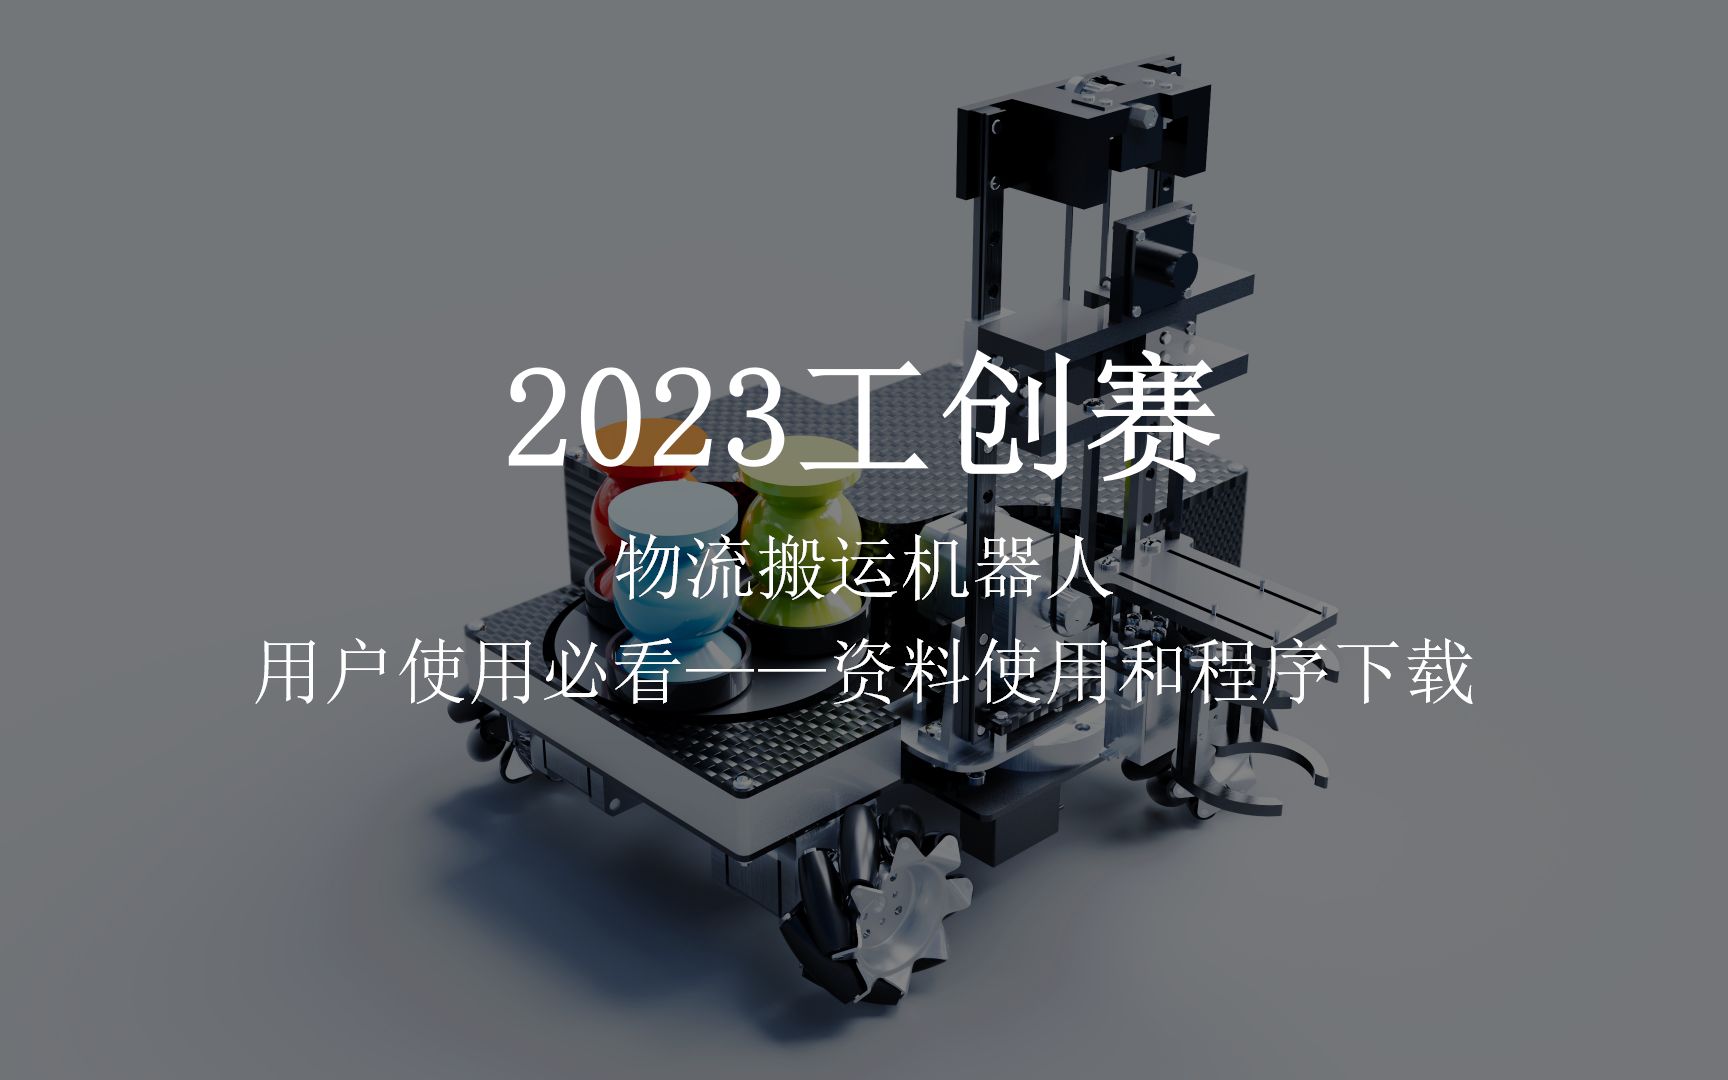 2023工创赛 物流搬运机器人 资料介绍及程序下载